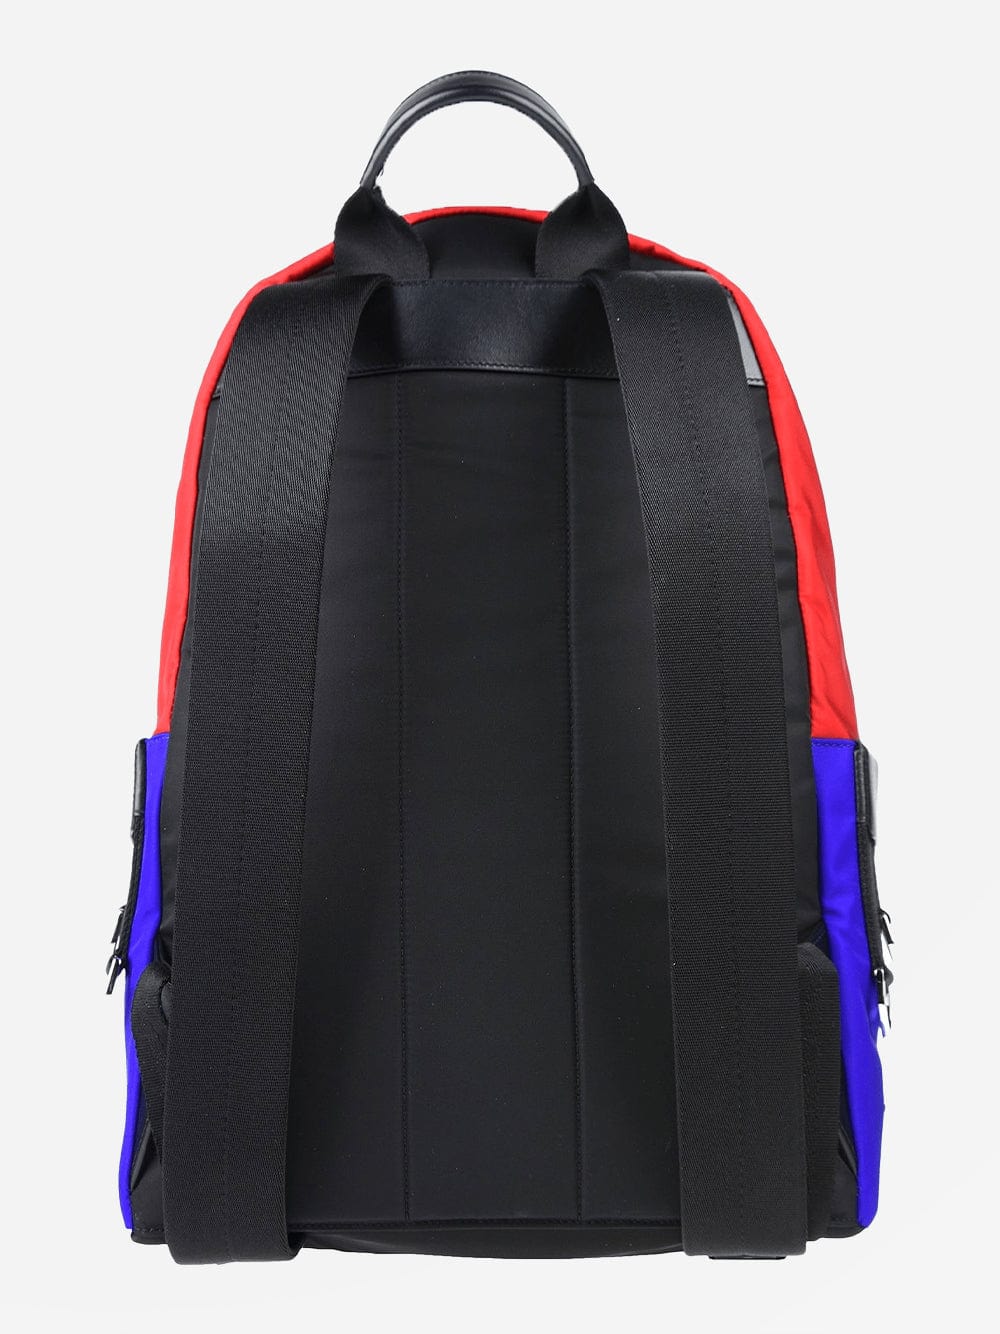 Dolce & Gabbana Super Pig Backpack